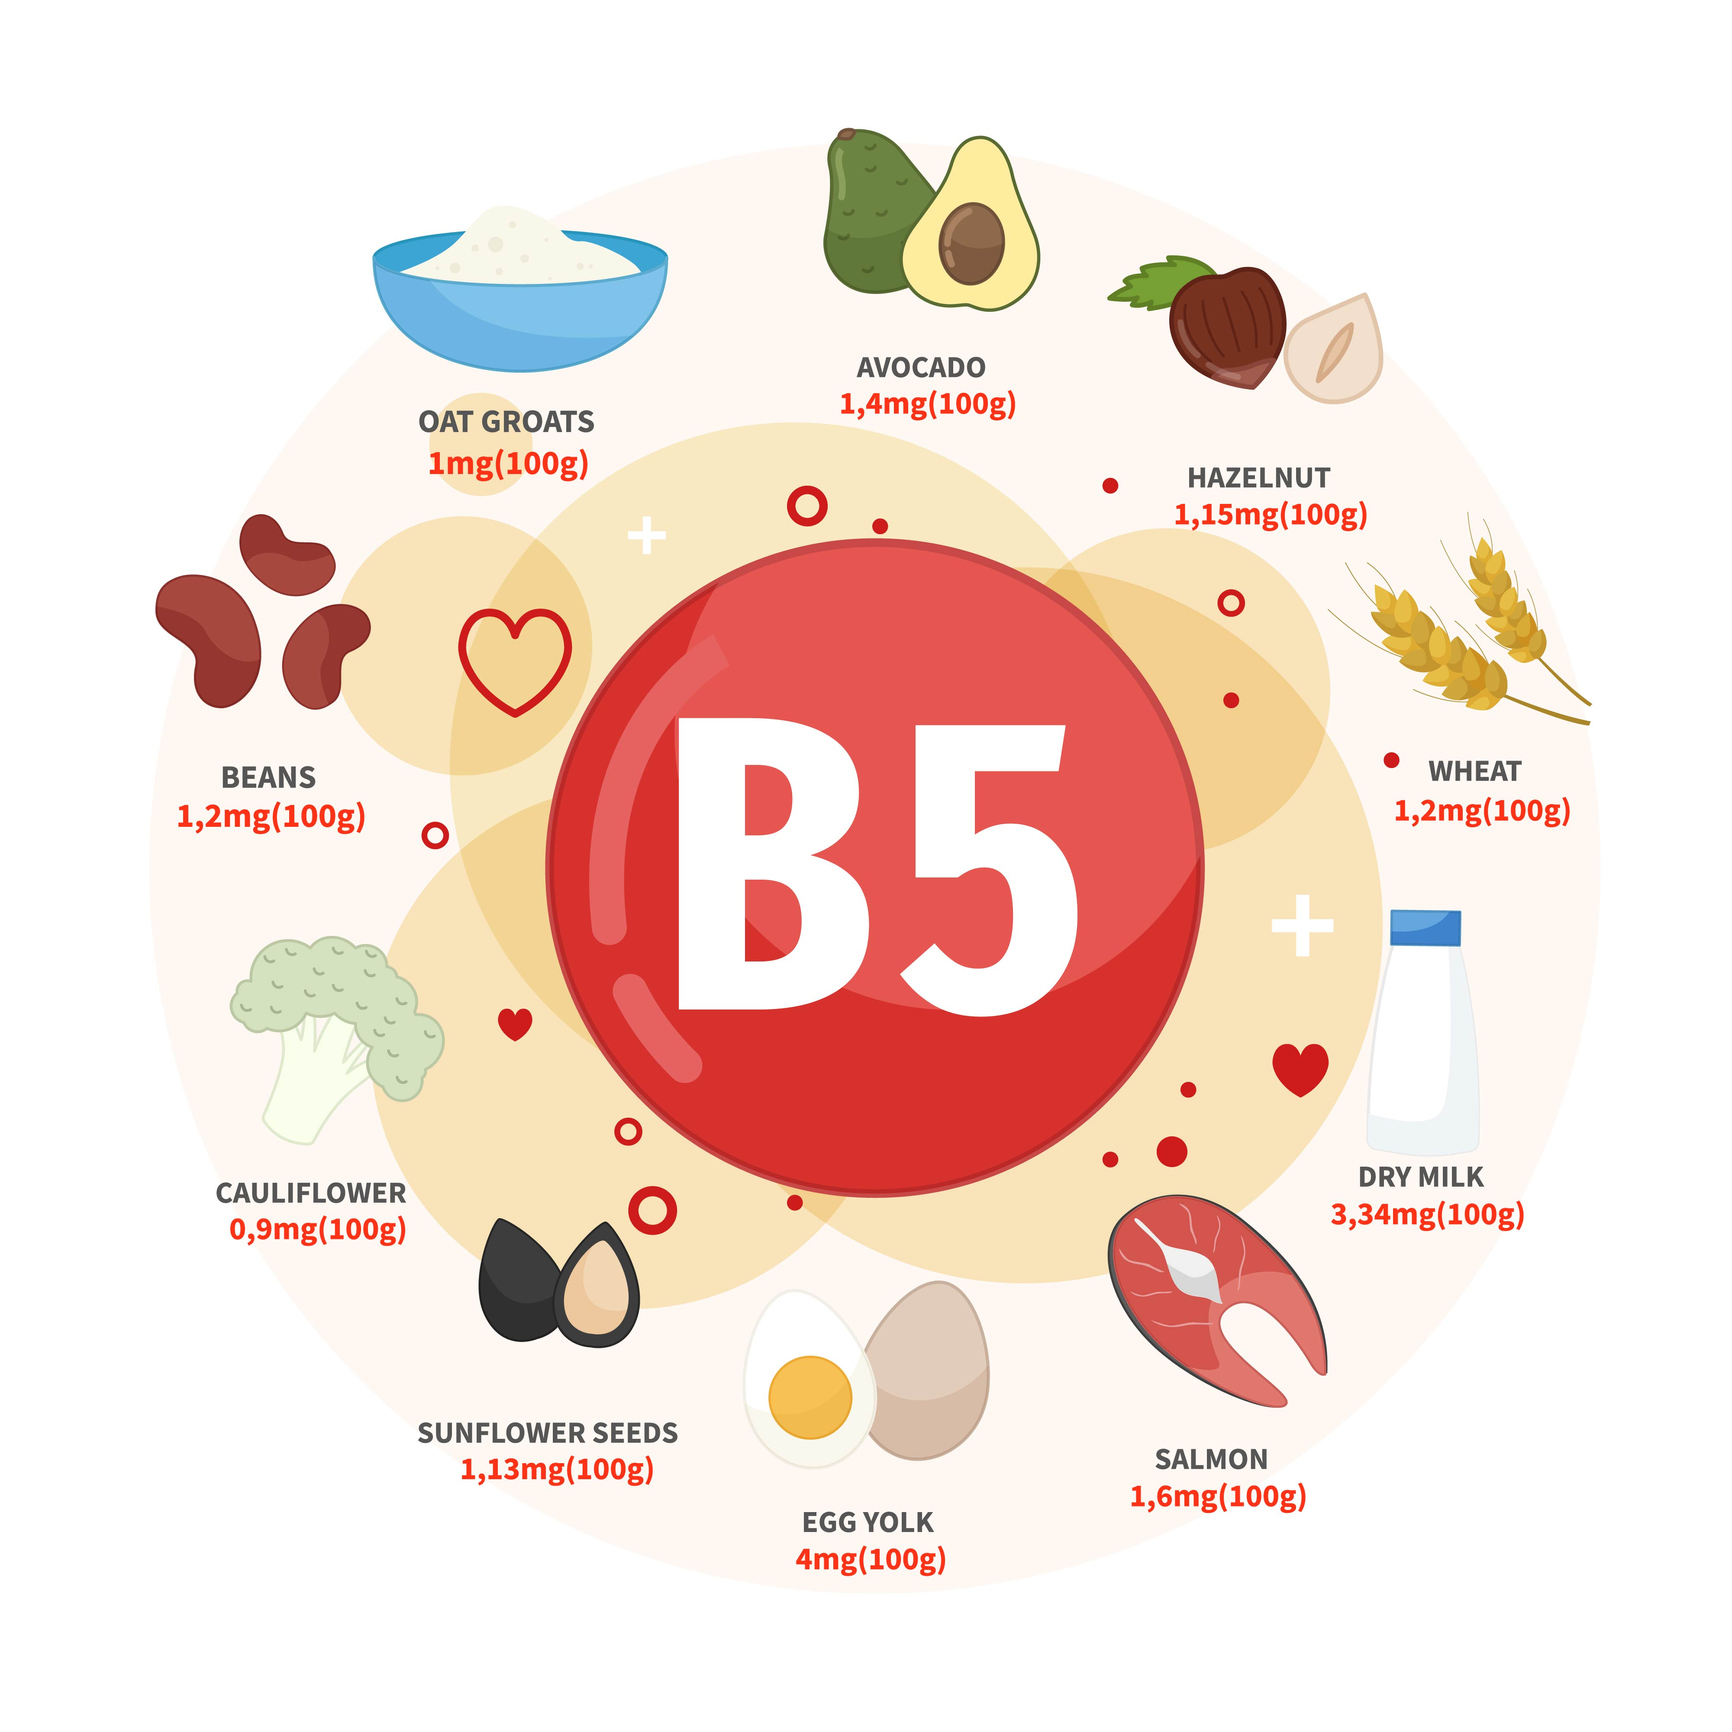 Mezi nejlepší zdroje vitaminu B5 patří avokádo, lískové oříšky, pšenice, mléko, losos, vejce, slunečnicová semínka, květák, fazole, ovesné vločky. 